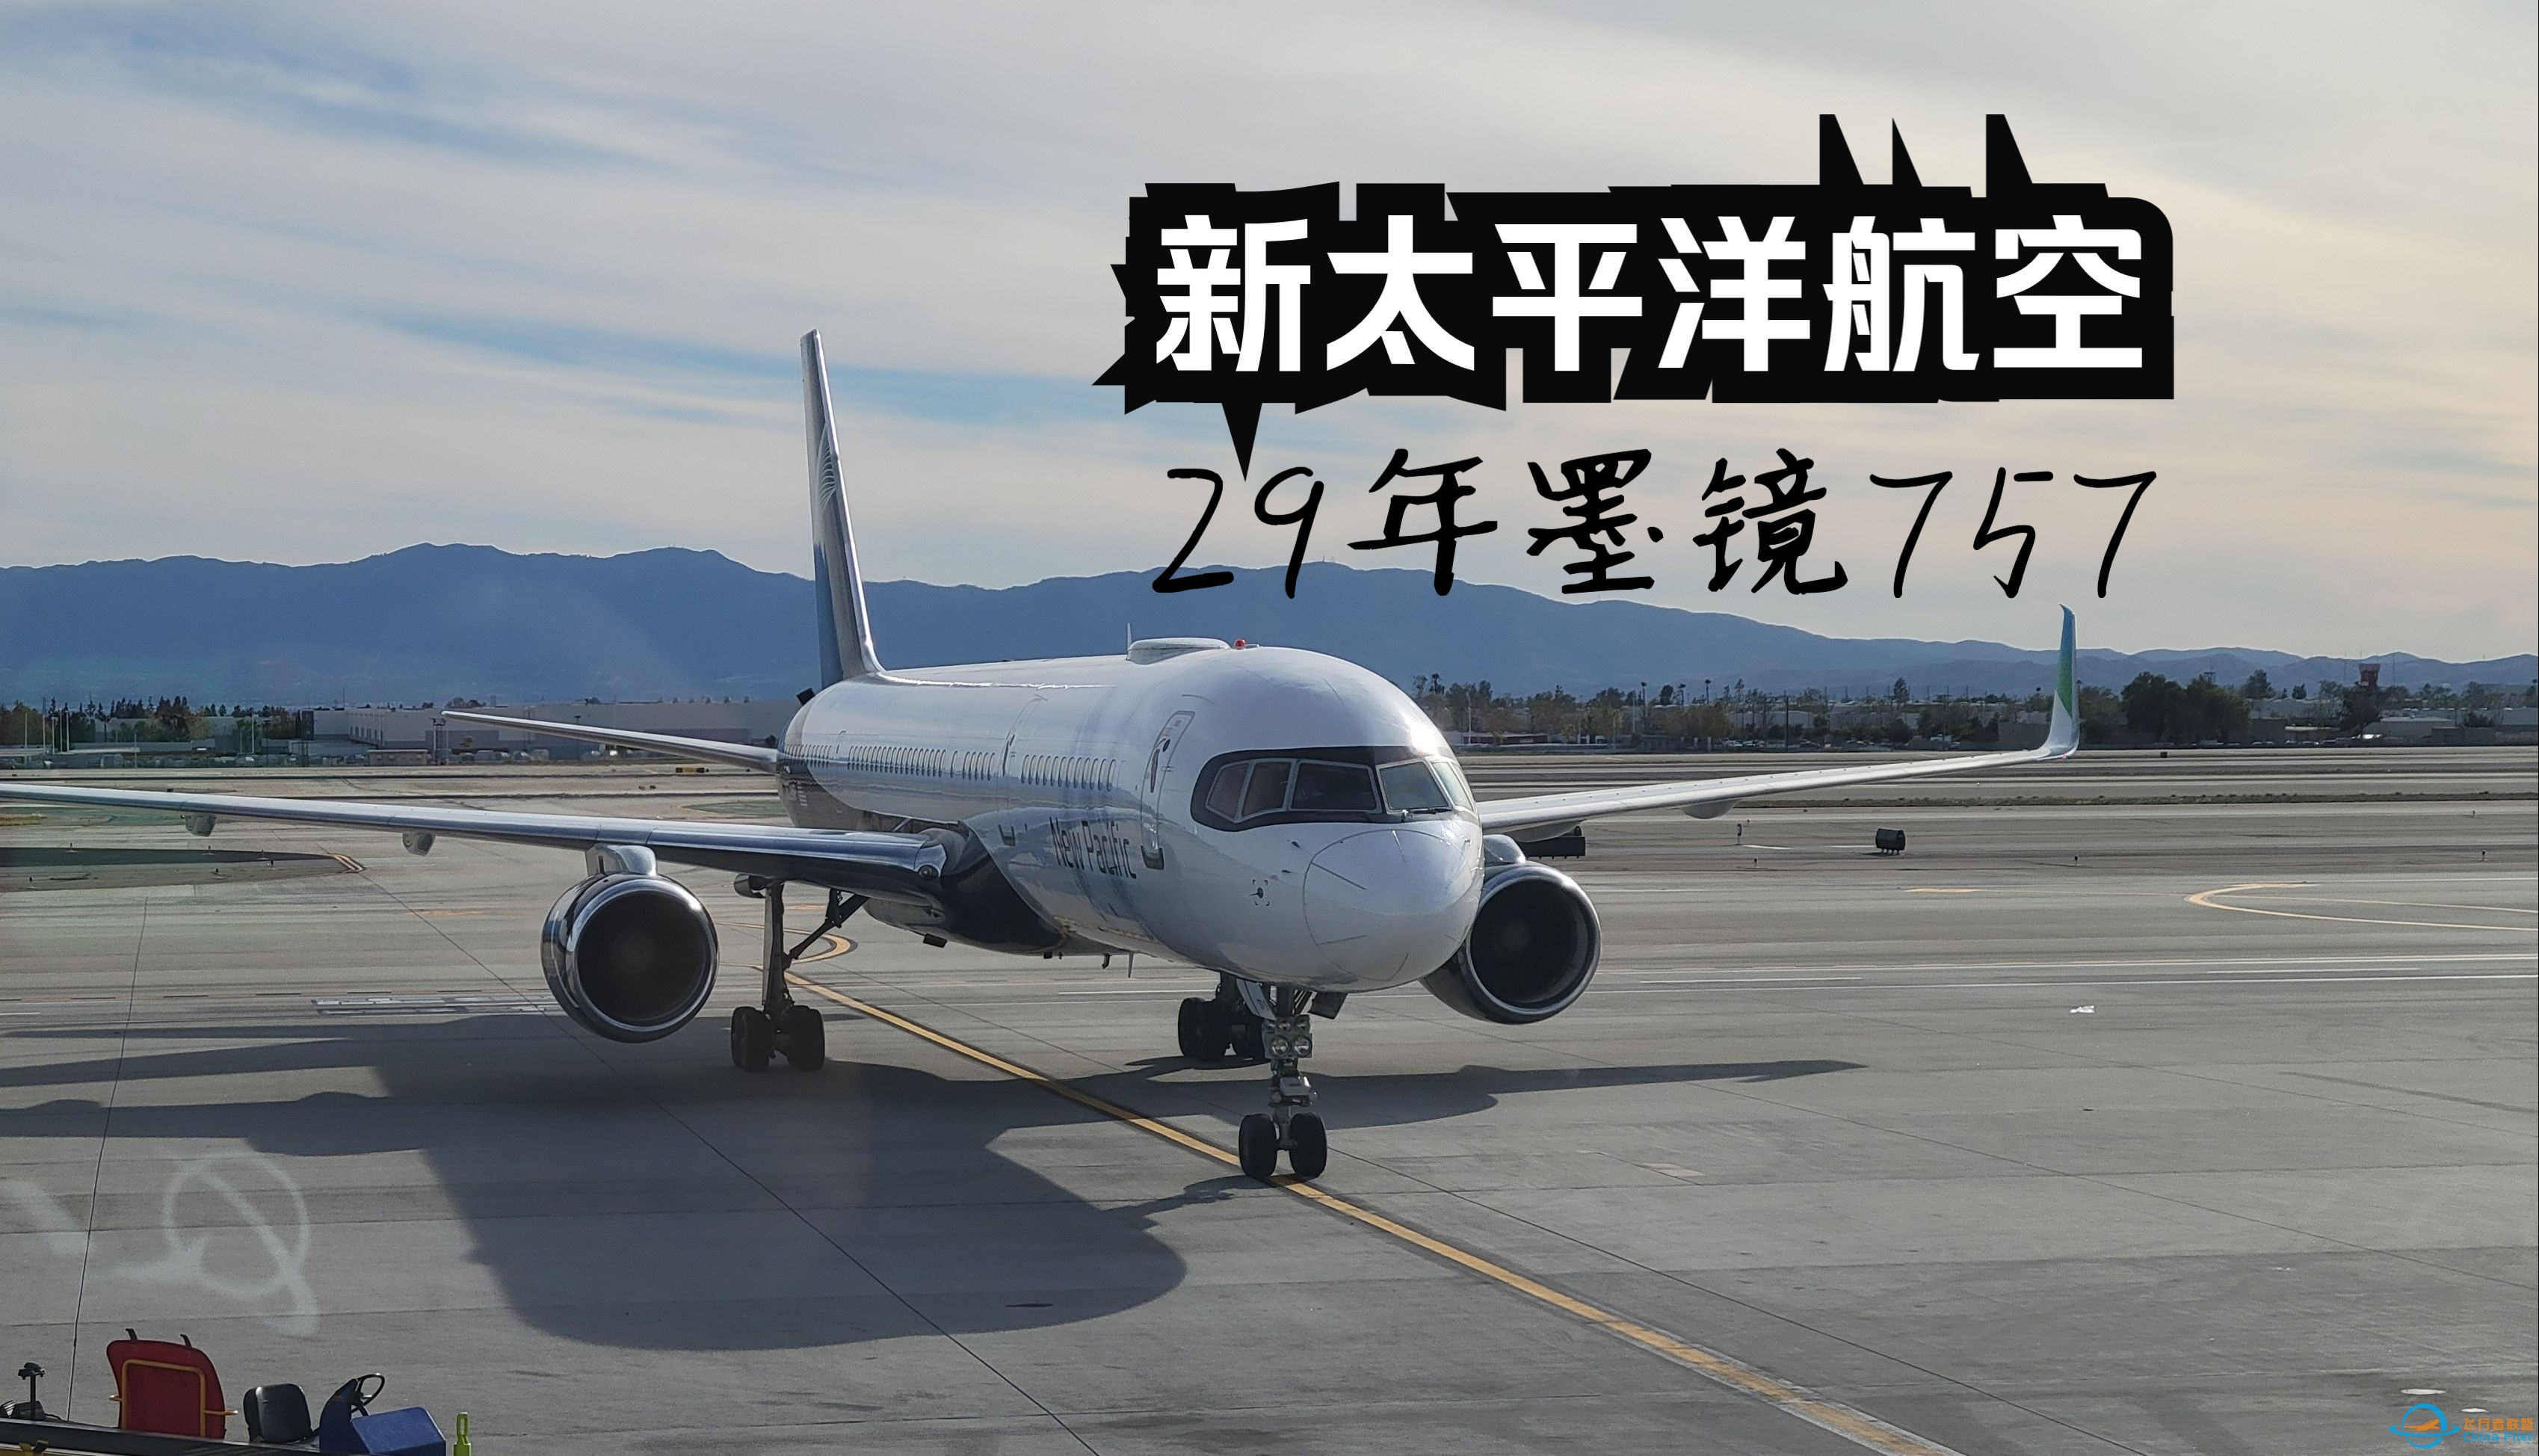 【飞行游记】当全新跨太平洋公司遇上墨镜757？全站首发新太平洋航空波音757超级经济舱体验-2427 